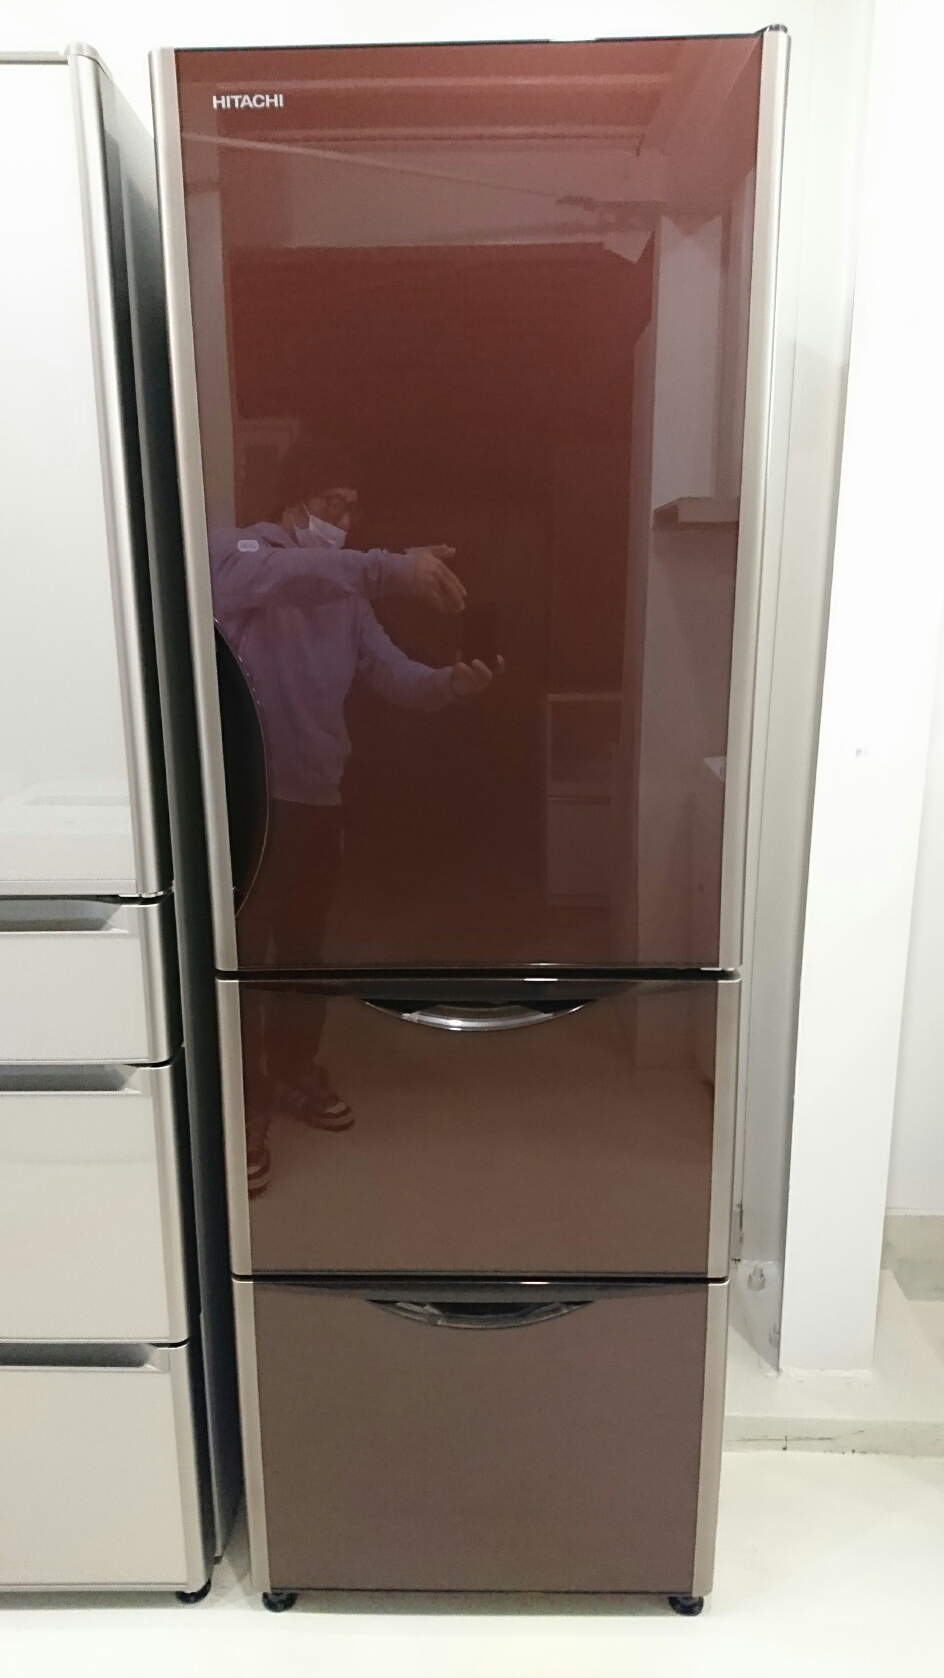 5/12 販売済IS HITACHI ノンフロン 冷凍冷蔵庫 R-S3800GV 2016年製 